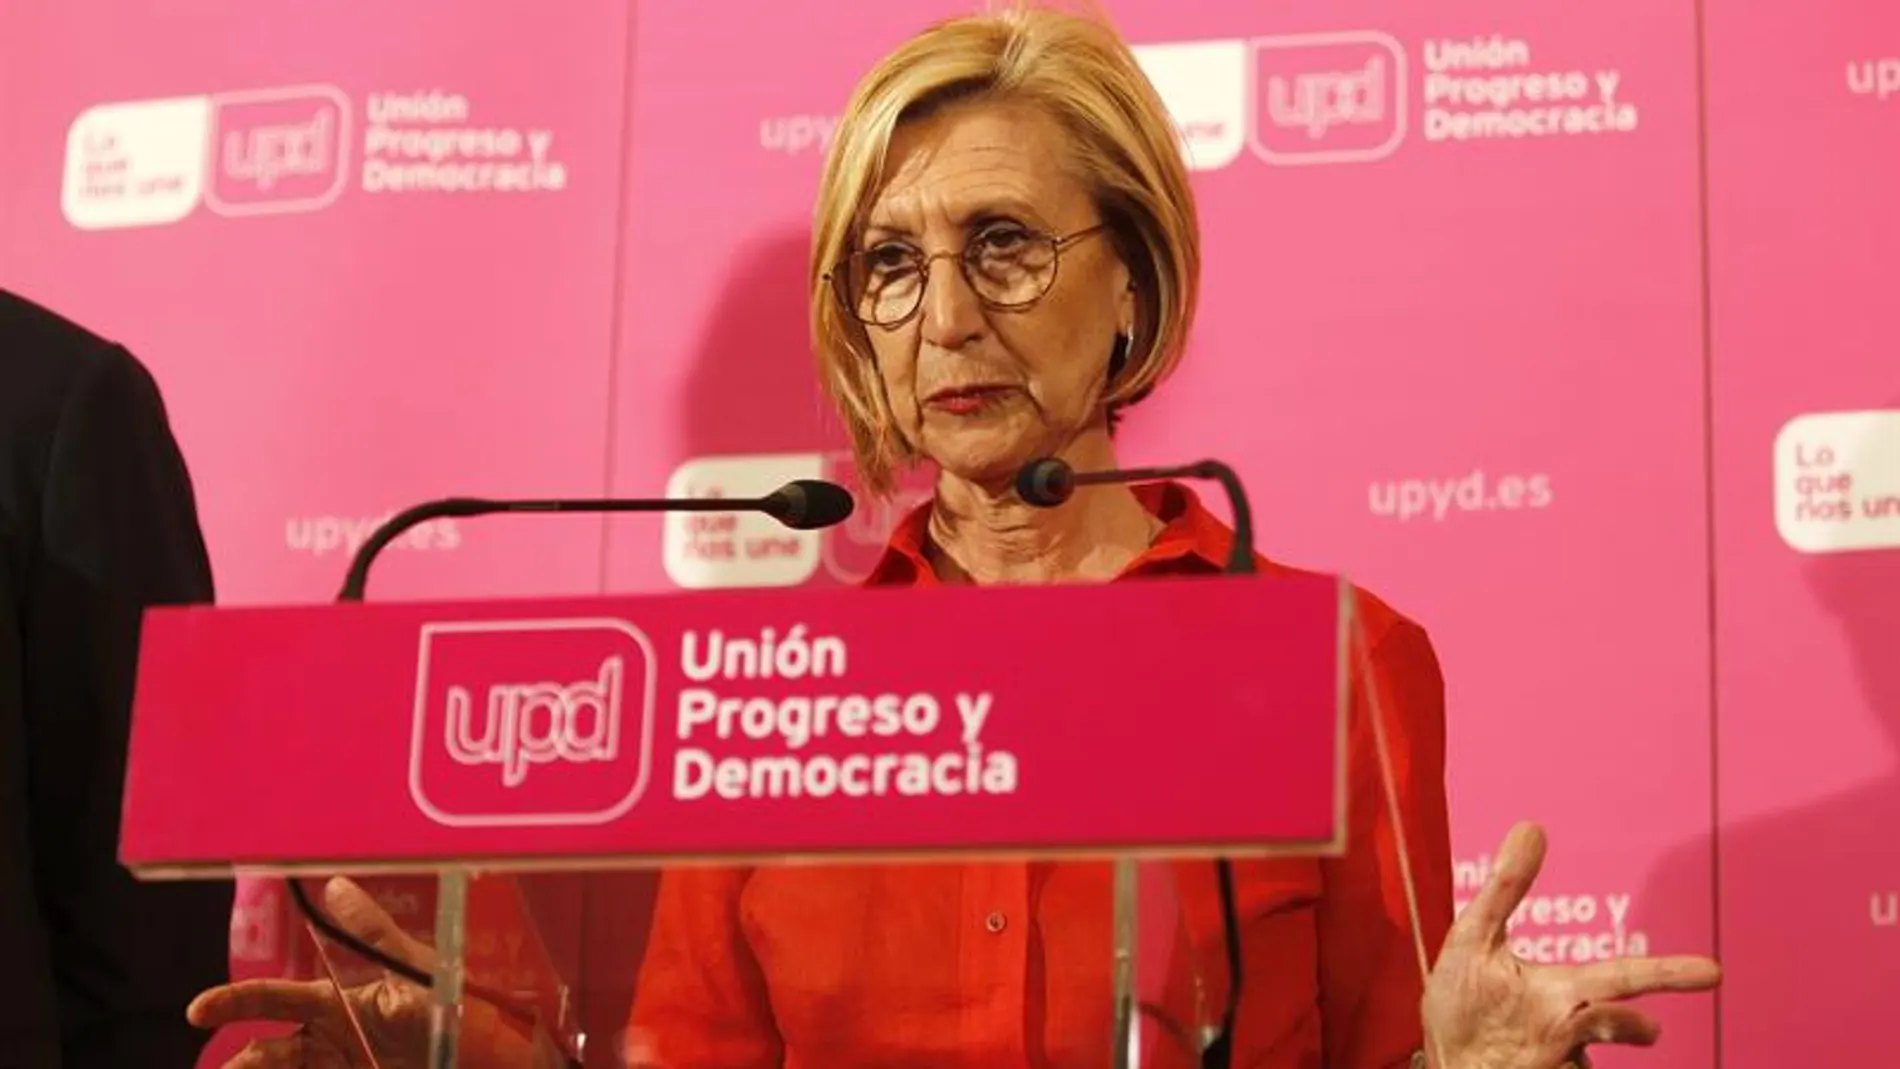 Rosa Díez no se presentará a la reelección